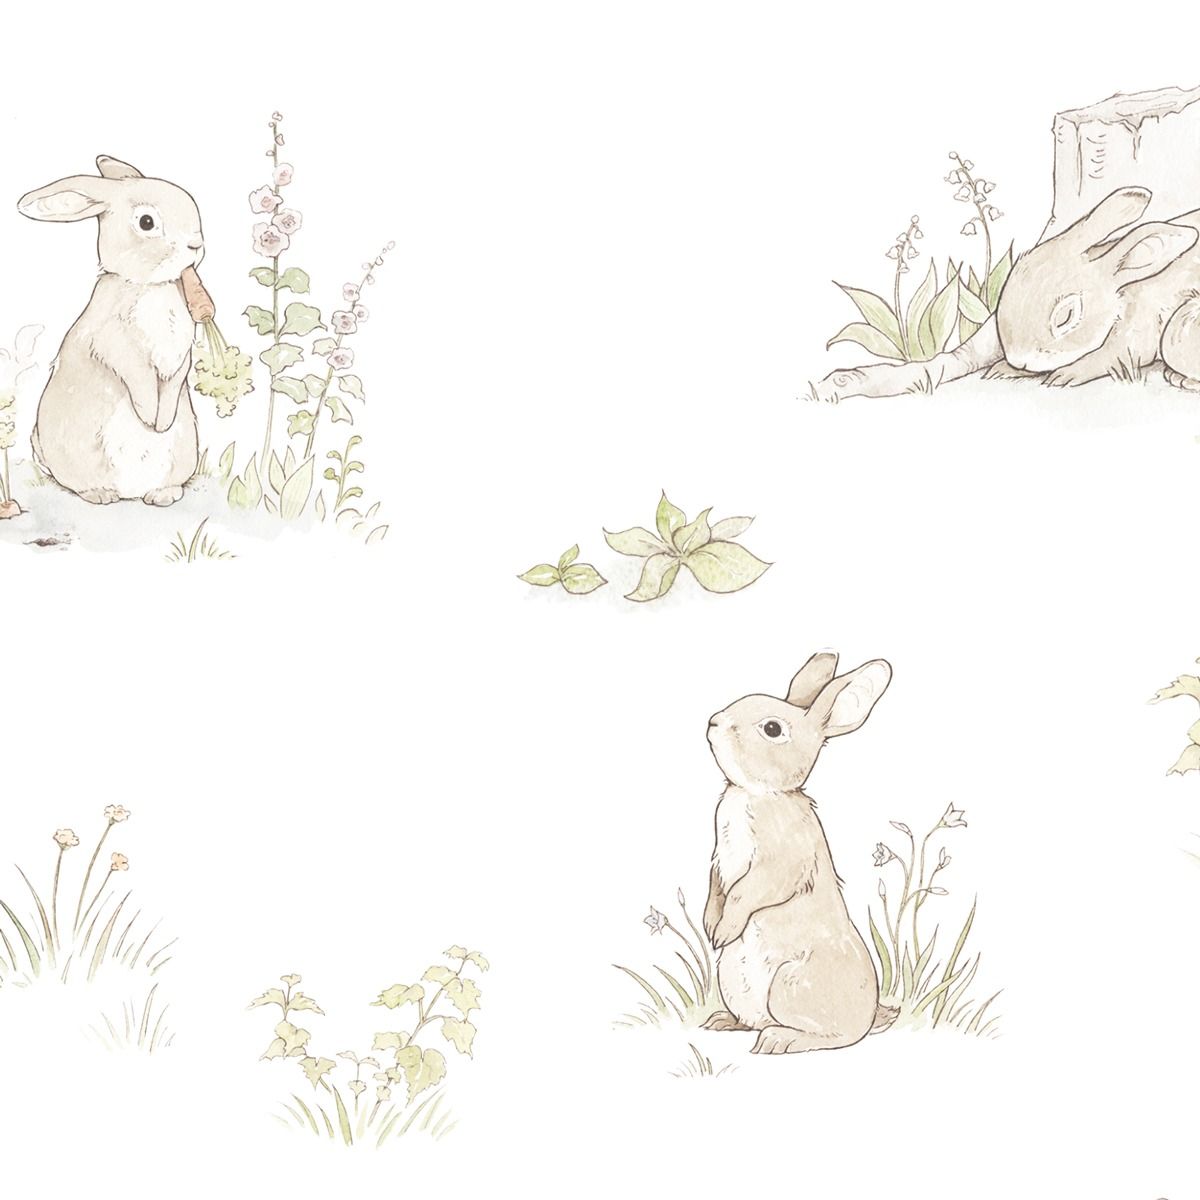 دانلود عکس نقاشی خرگوش وحشی با پس زمینه سفید 